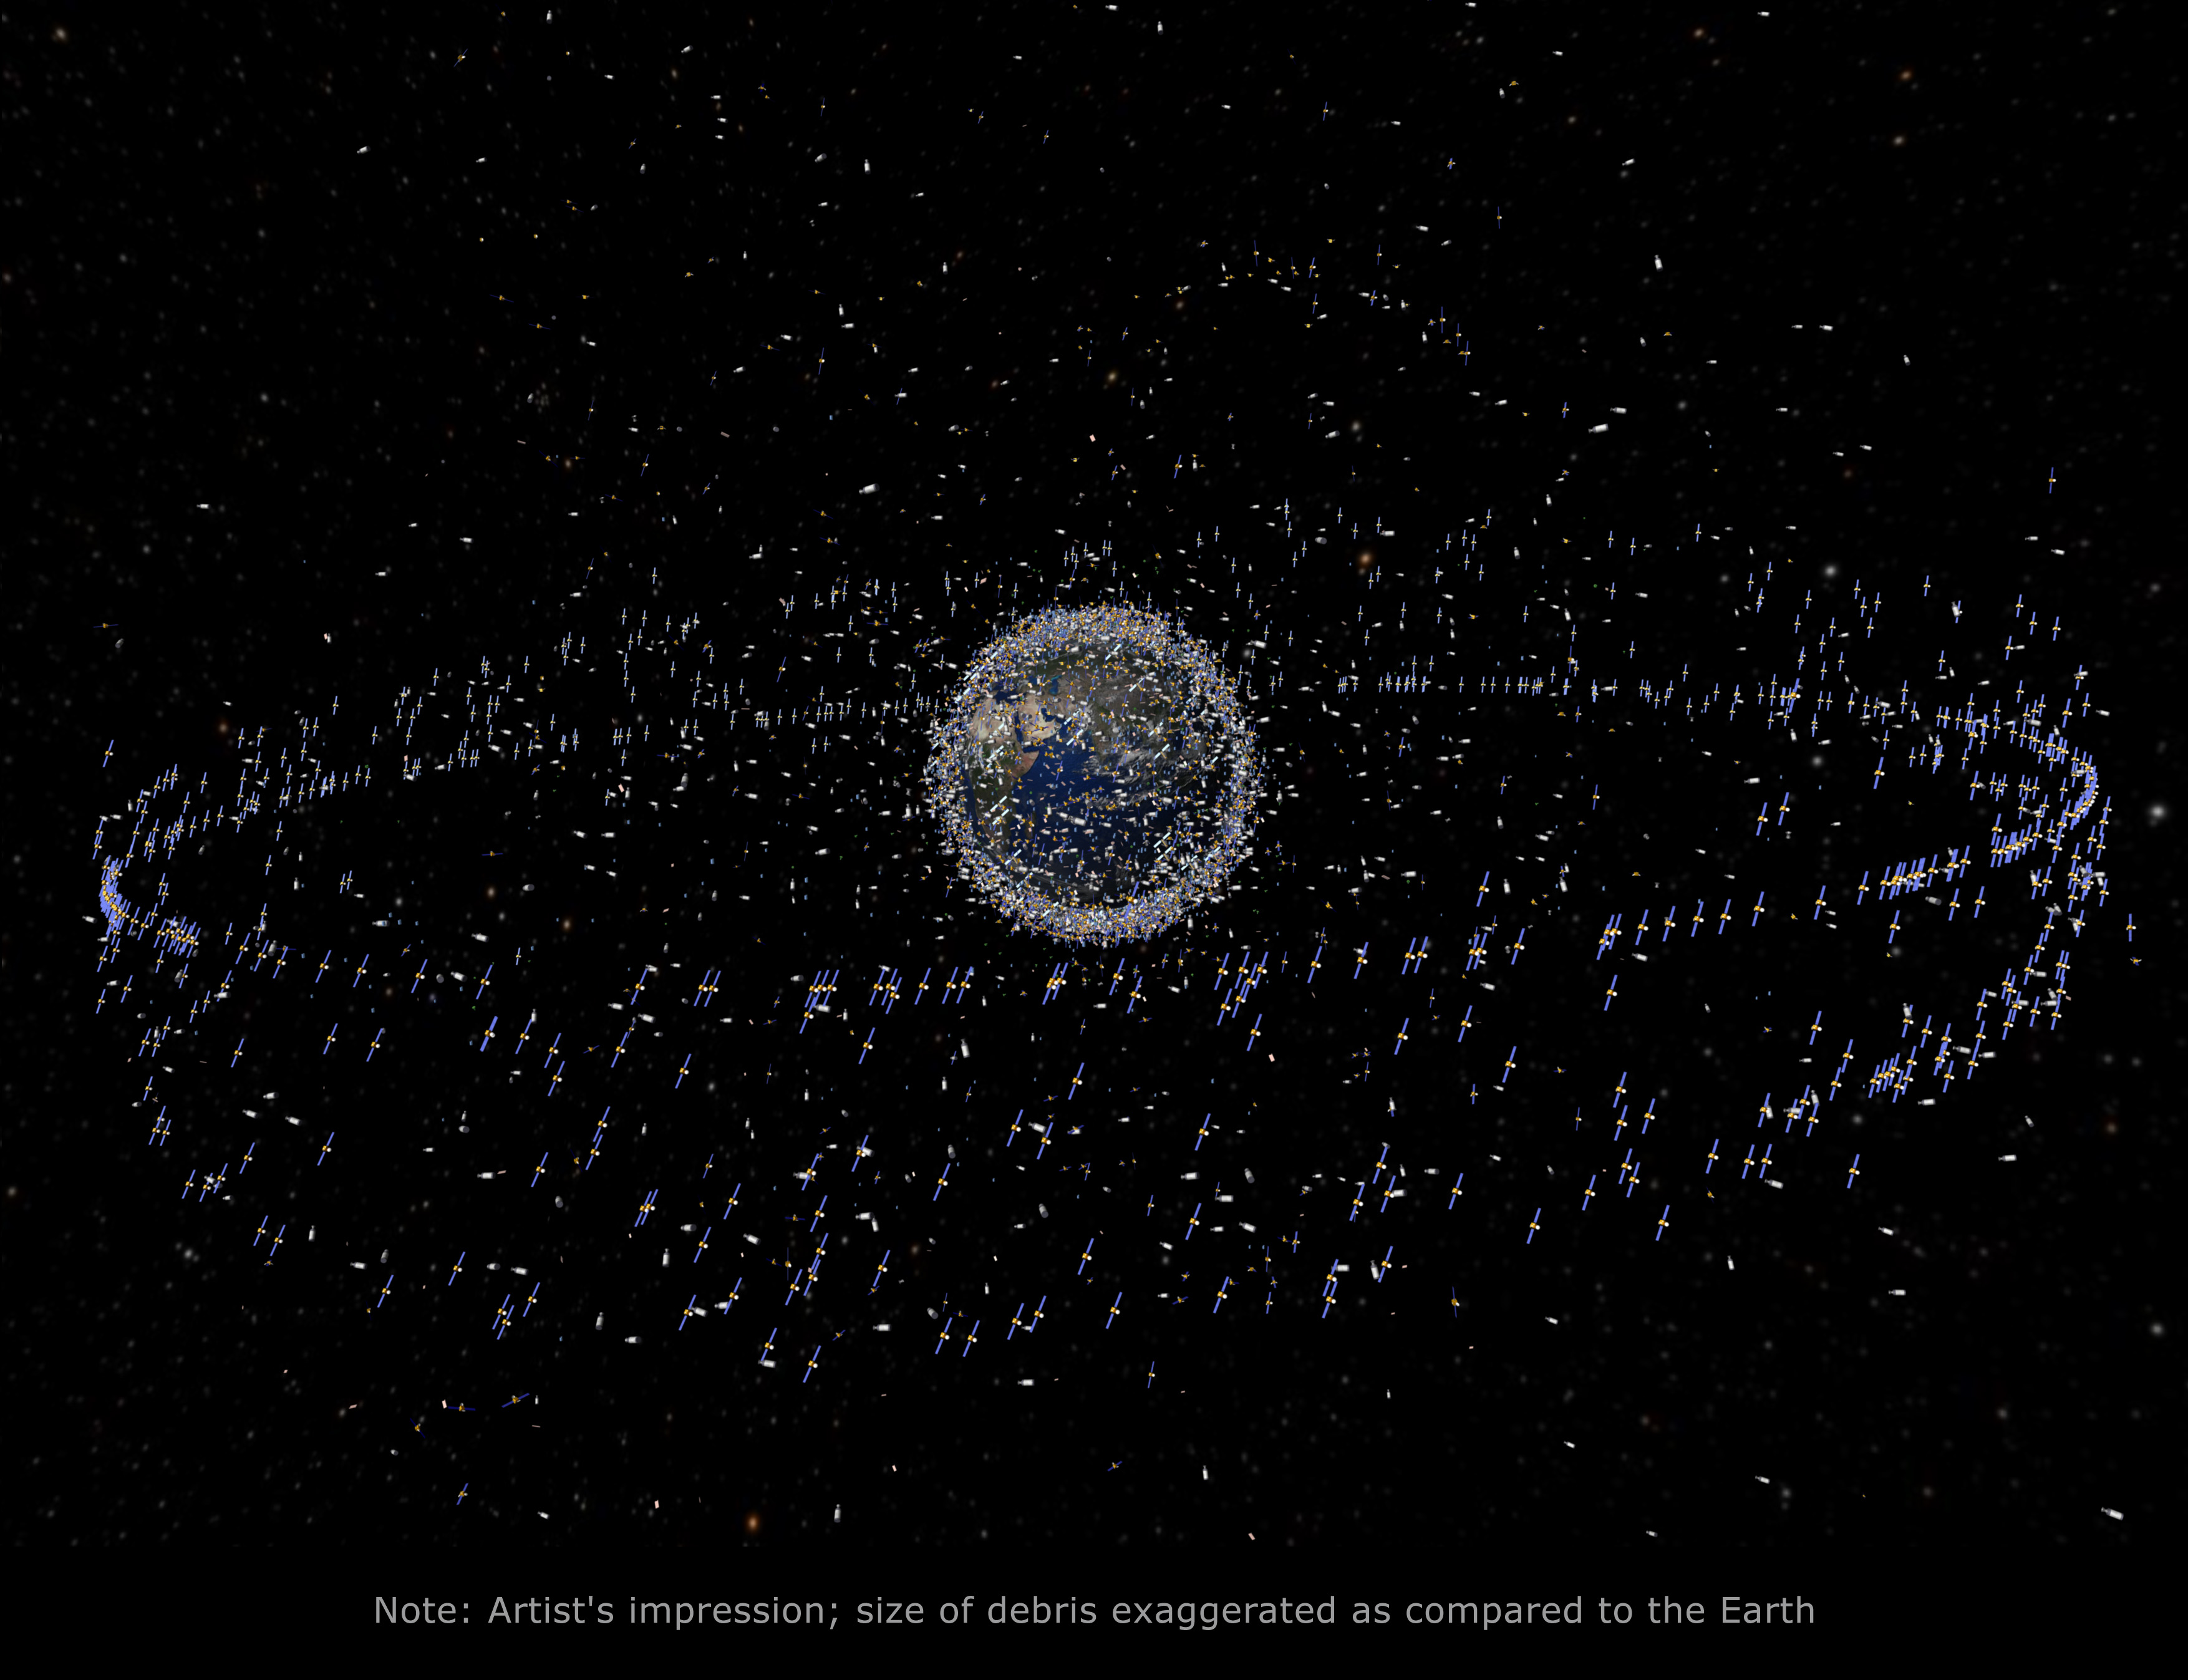 Künstlervorstellung der Verteilung von Weltraumschritt um die Erde, basierend auf tatsächlichen Daten.